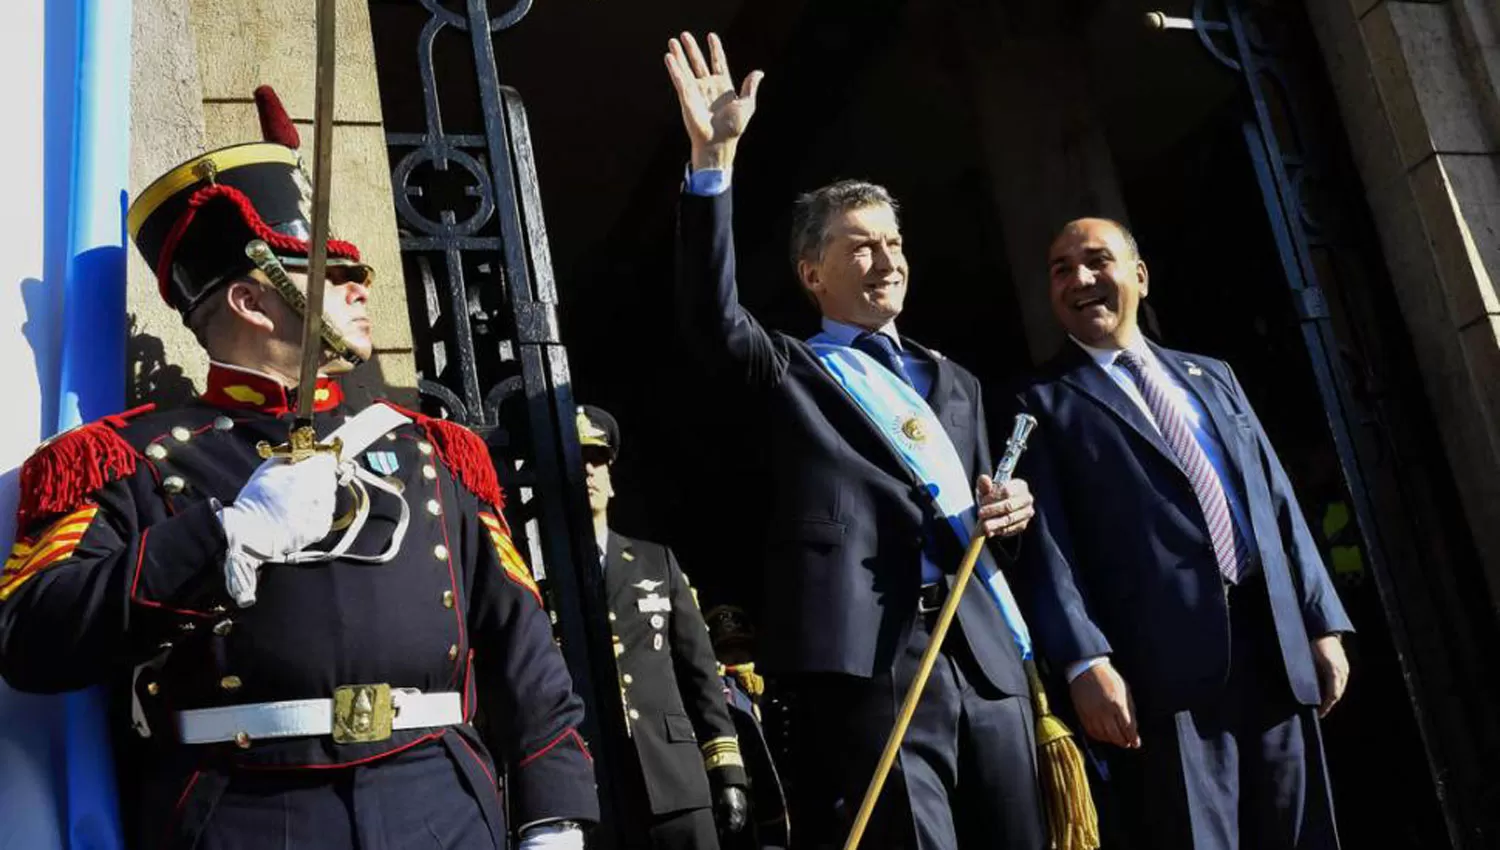 BICENTENARIO. El presidente y el gobernador, durante los festejos por los 200 años de la Independencia.